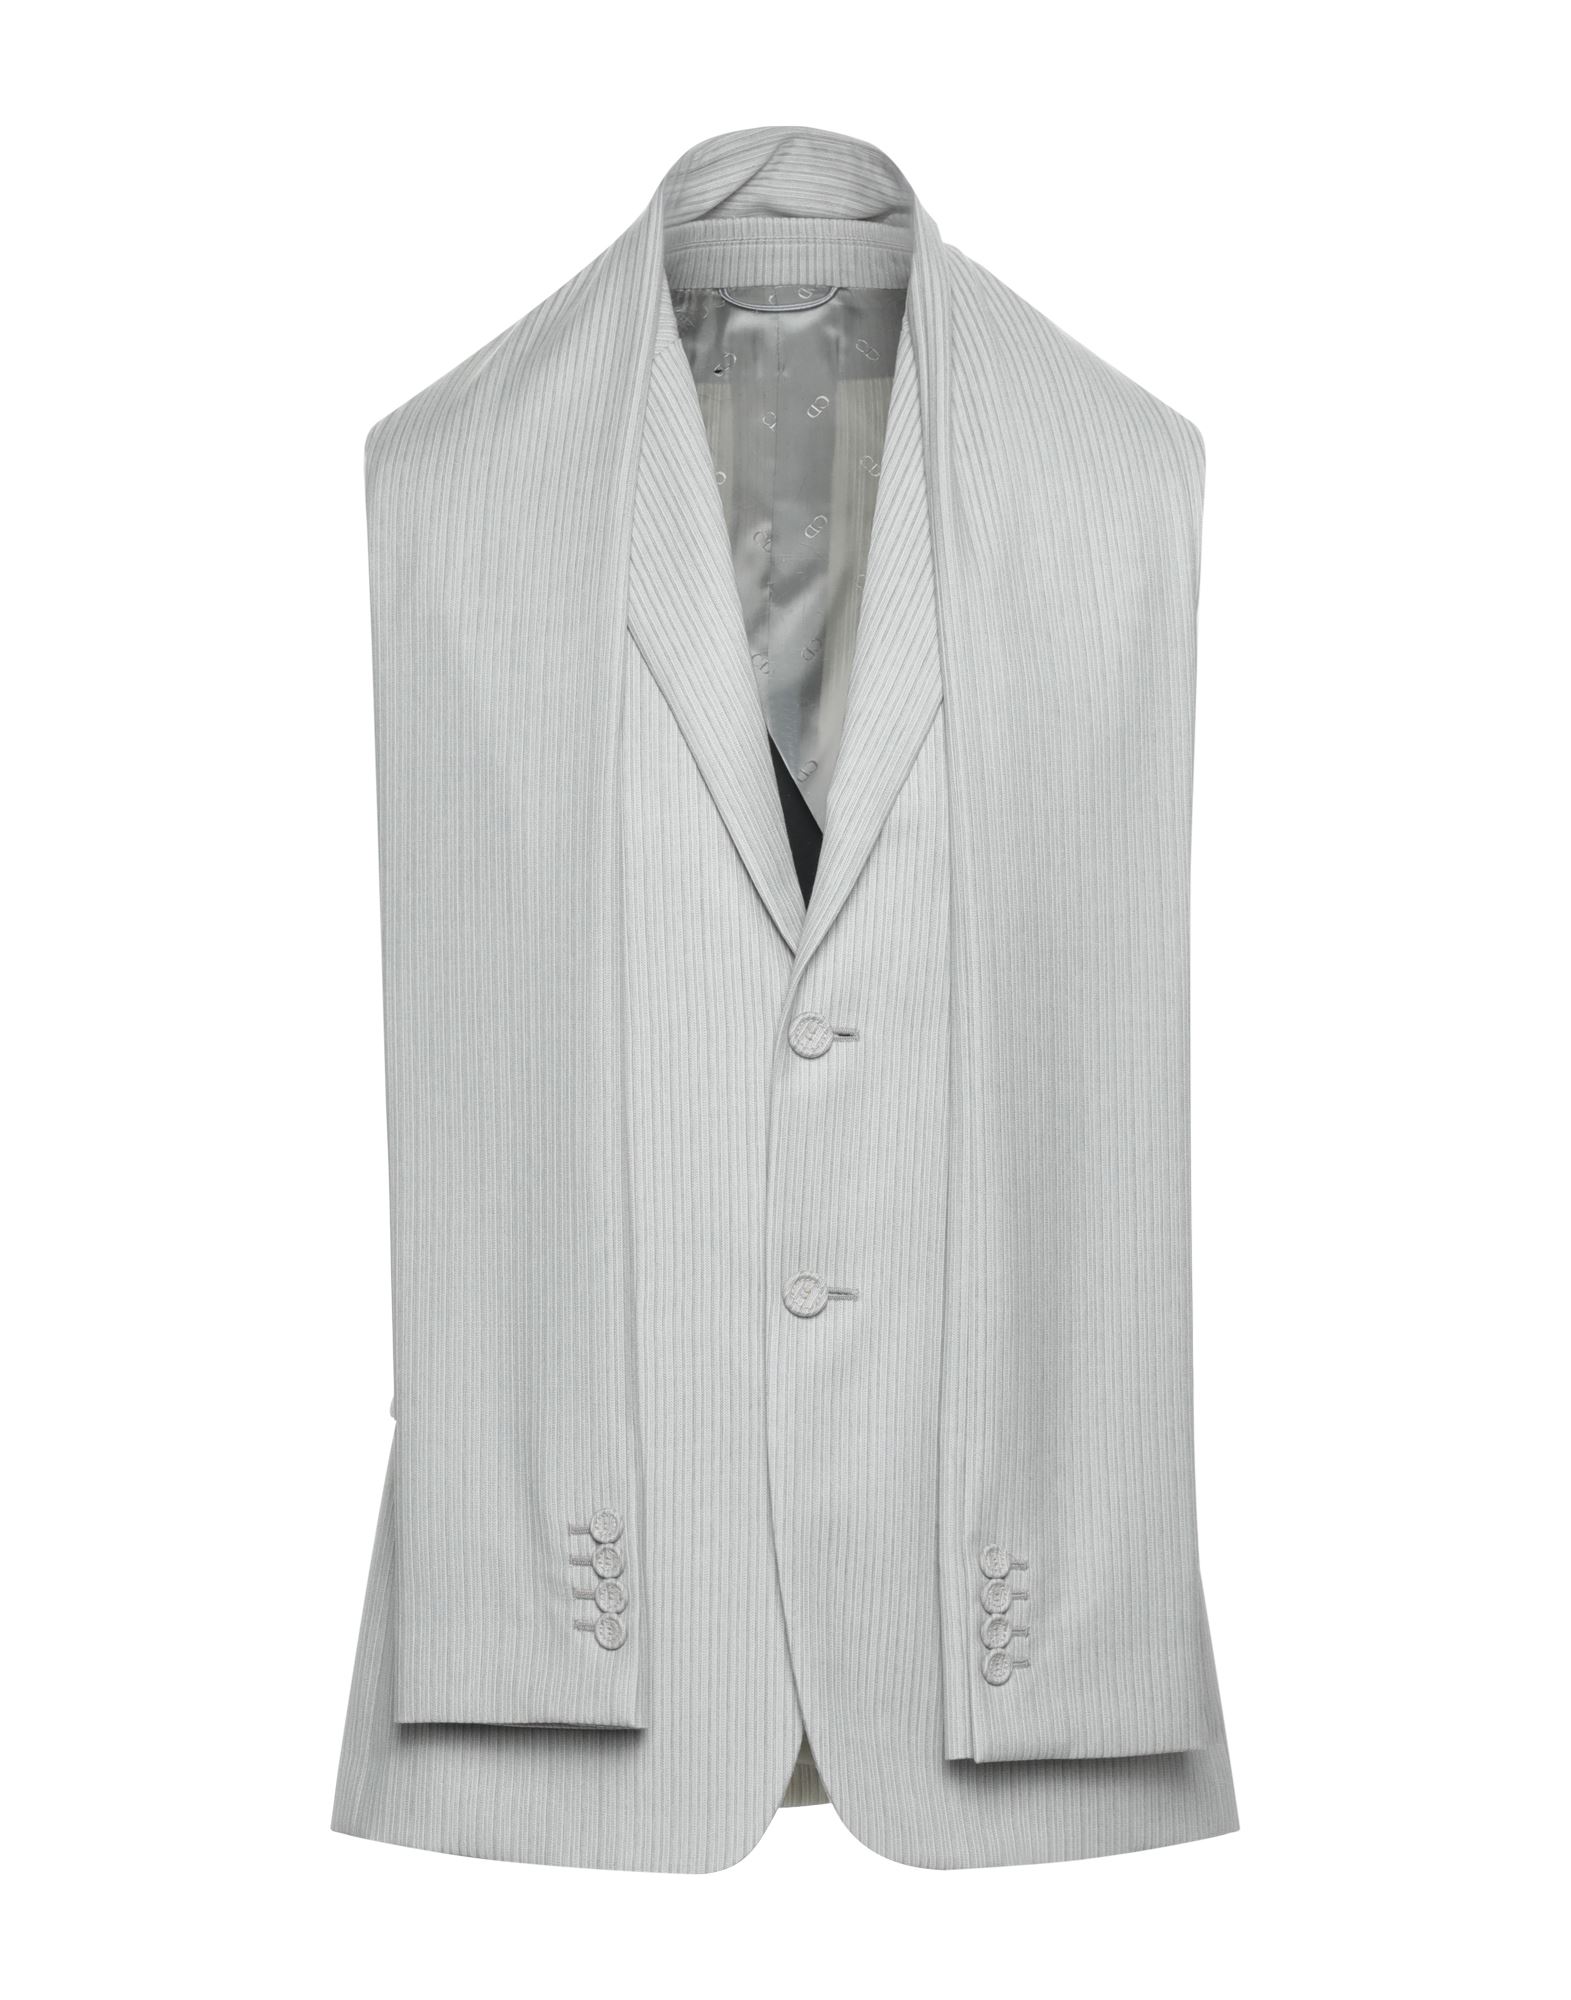 ディオールオム(Dior homme) メンズスーツ | 通販・人気ランキング 